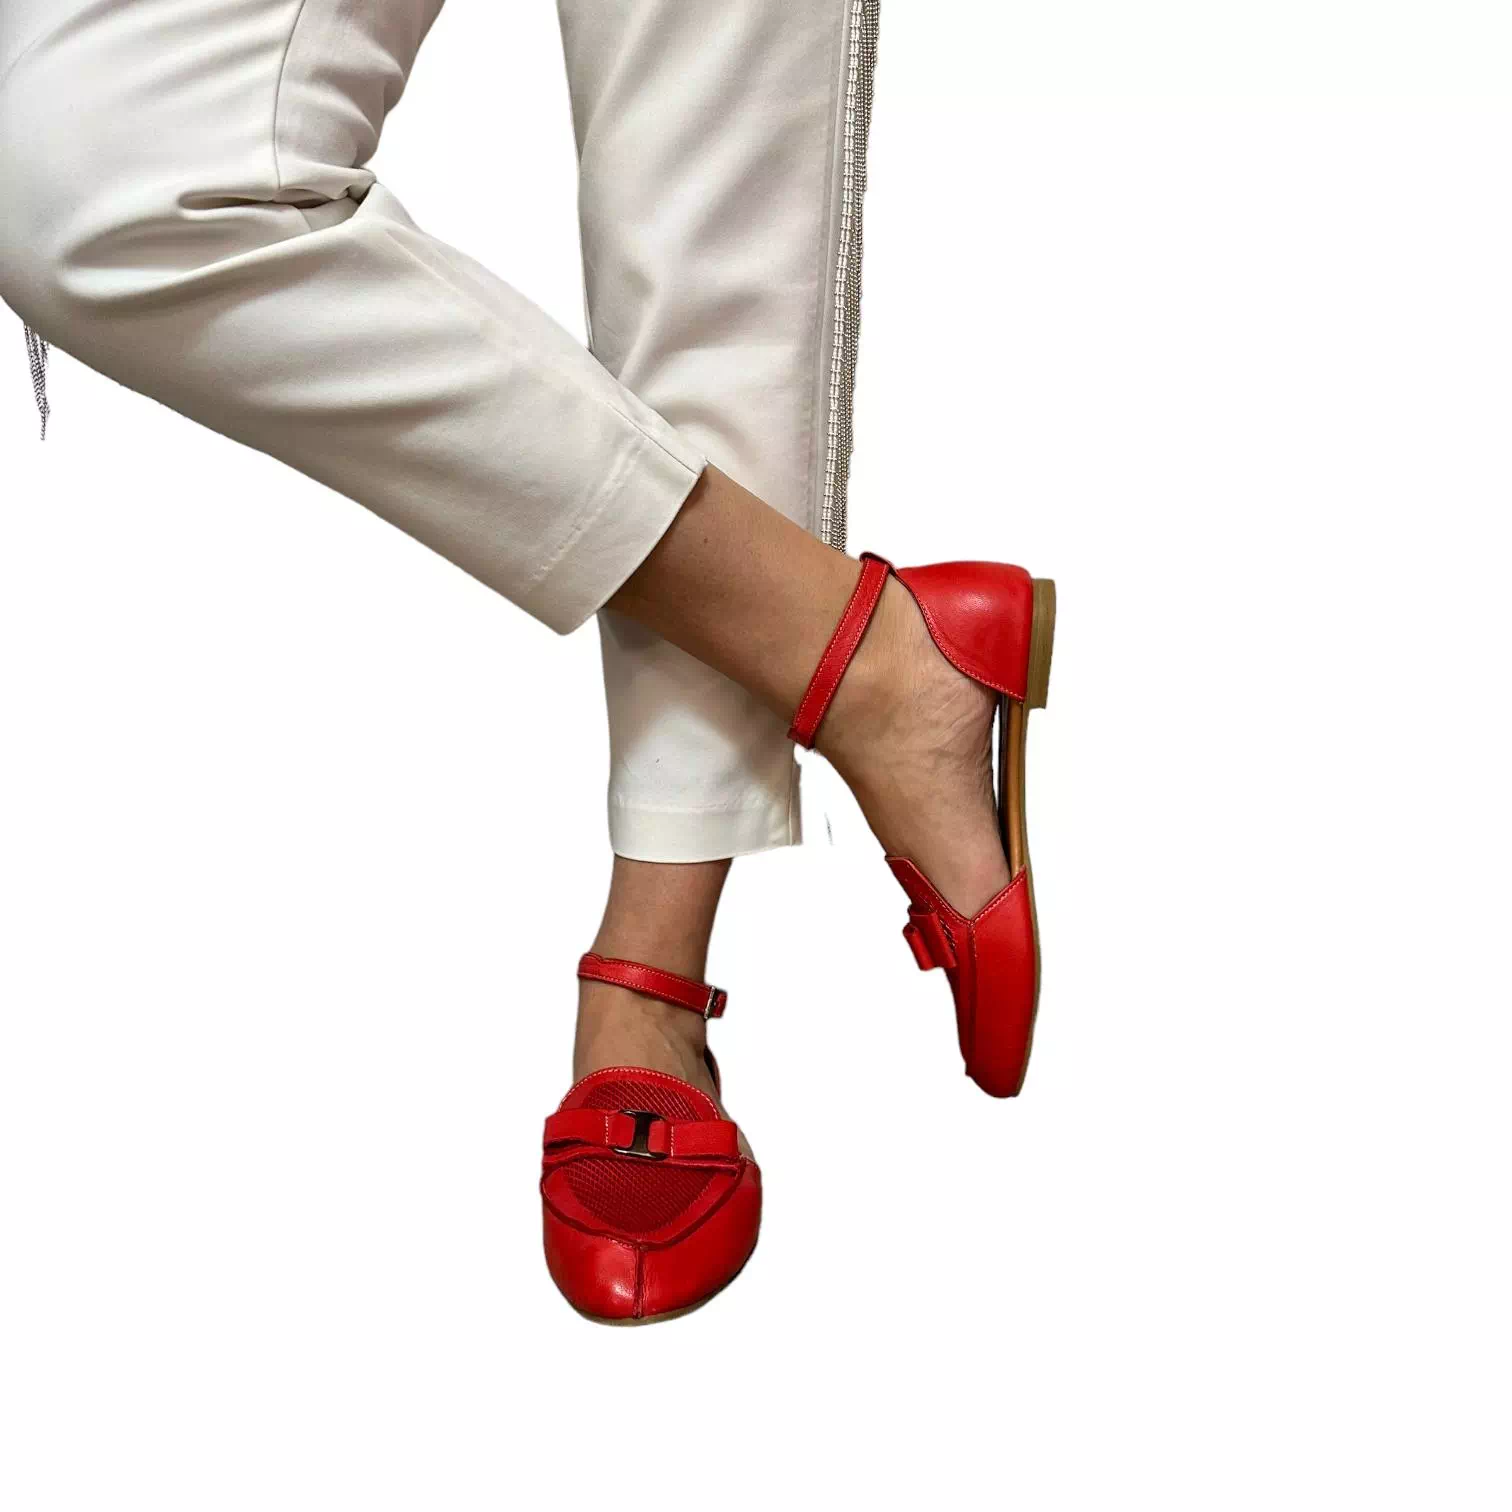 Sandale rosii cu detaliu tip fundita